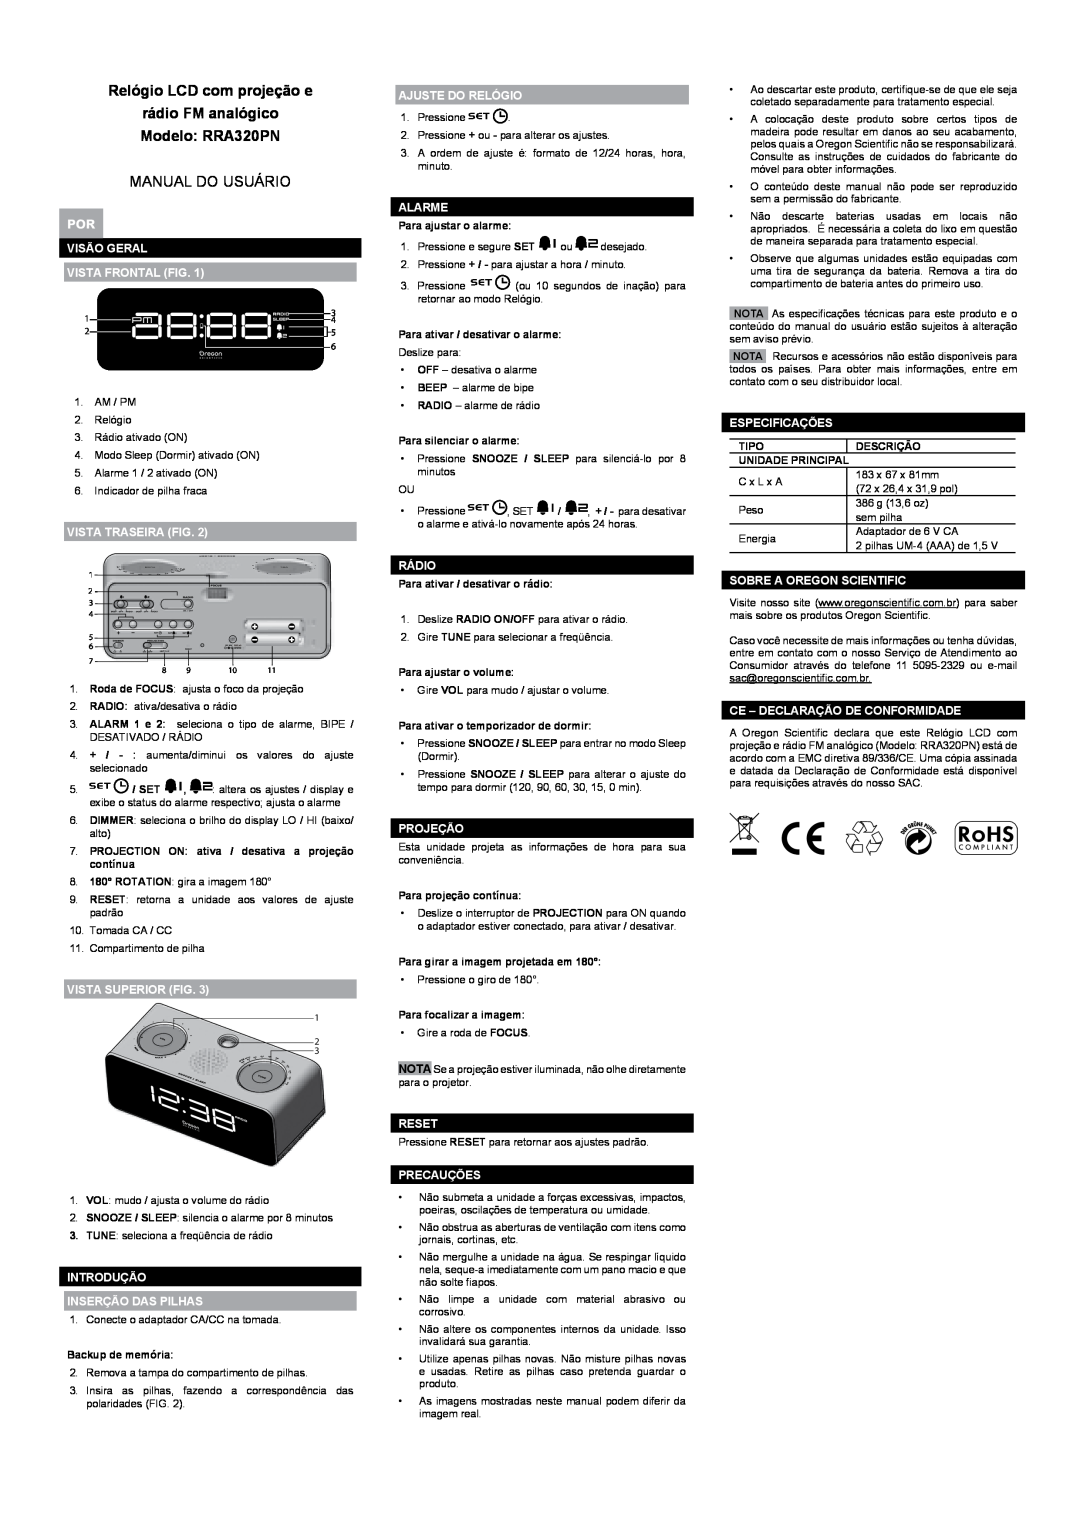 Oregon Scientific user manual Relógio LCD com projeção e rádio FM analógico Modelo RRA320PN, Manual Do Usuário 